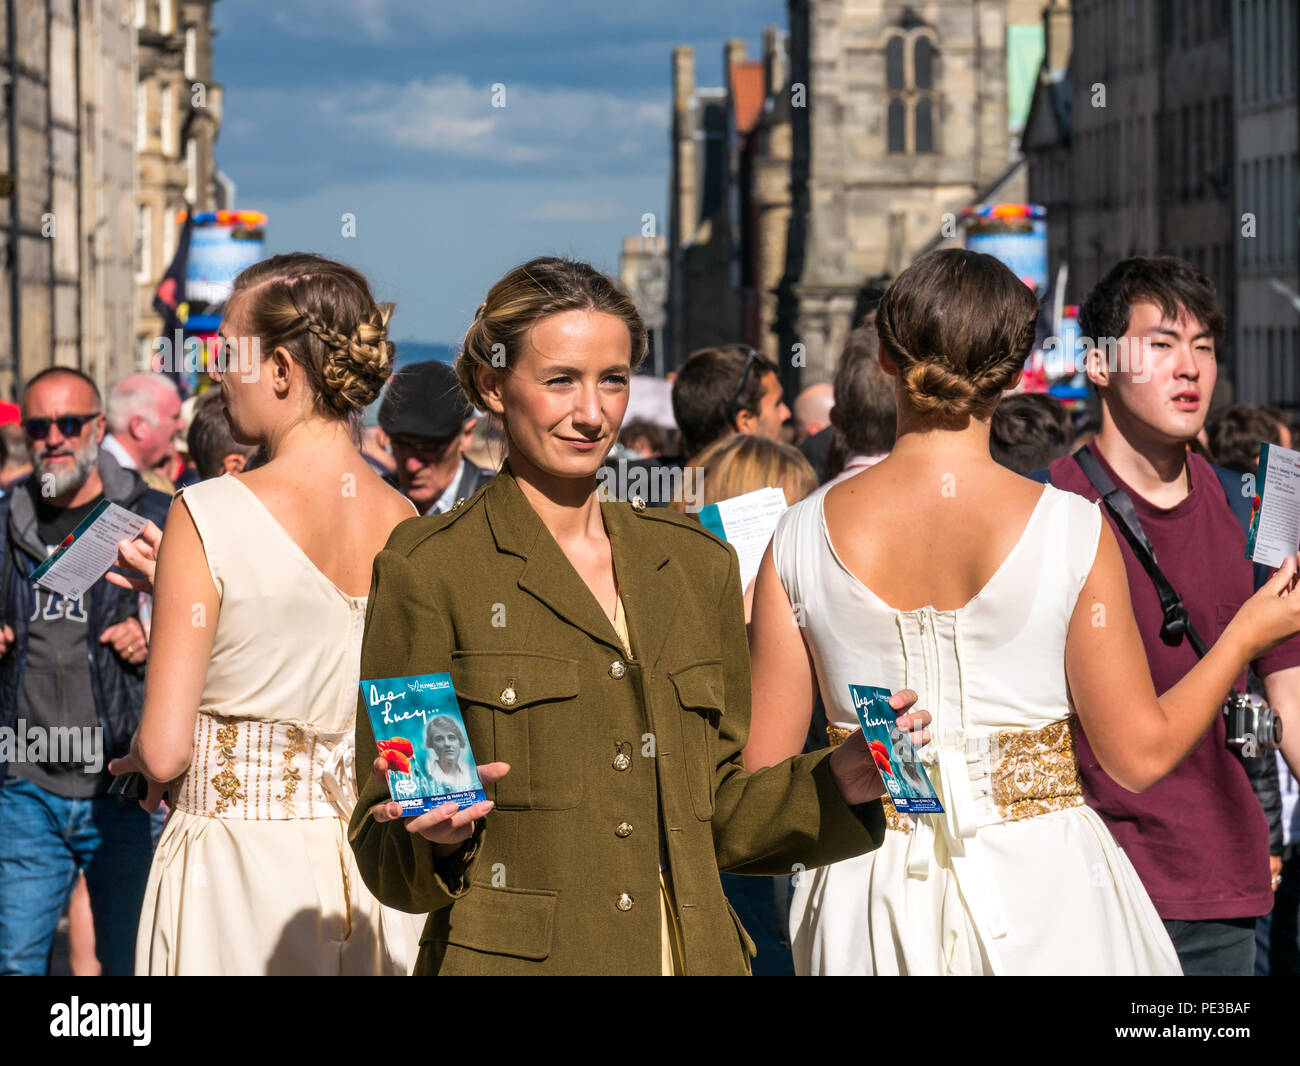 Jolie femme les artistes interprètes ou exécutants dans la deuxième guerre mondiale, des costumes Chers Lucy montrent la distribution de flyers, Royal Mile, Édimbourg, Écosse, Royaume-Uni lors de festival Banque D'Images